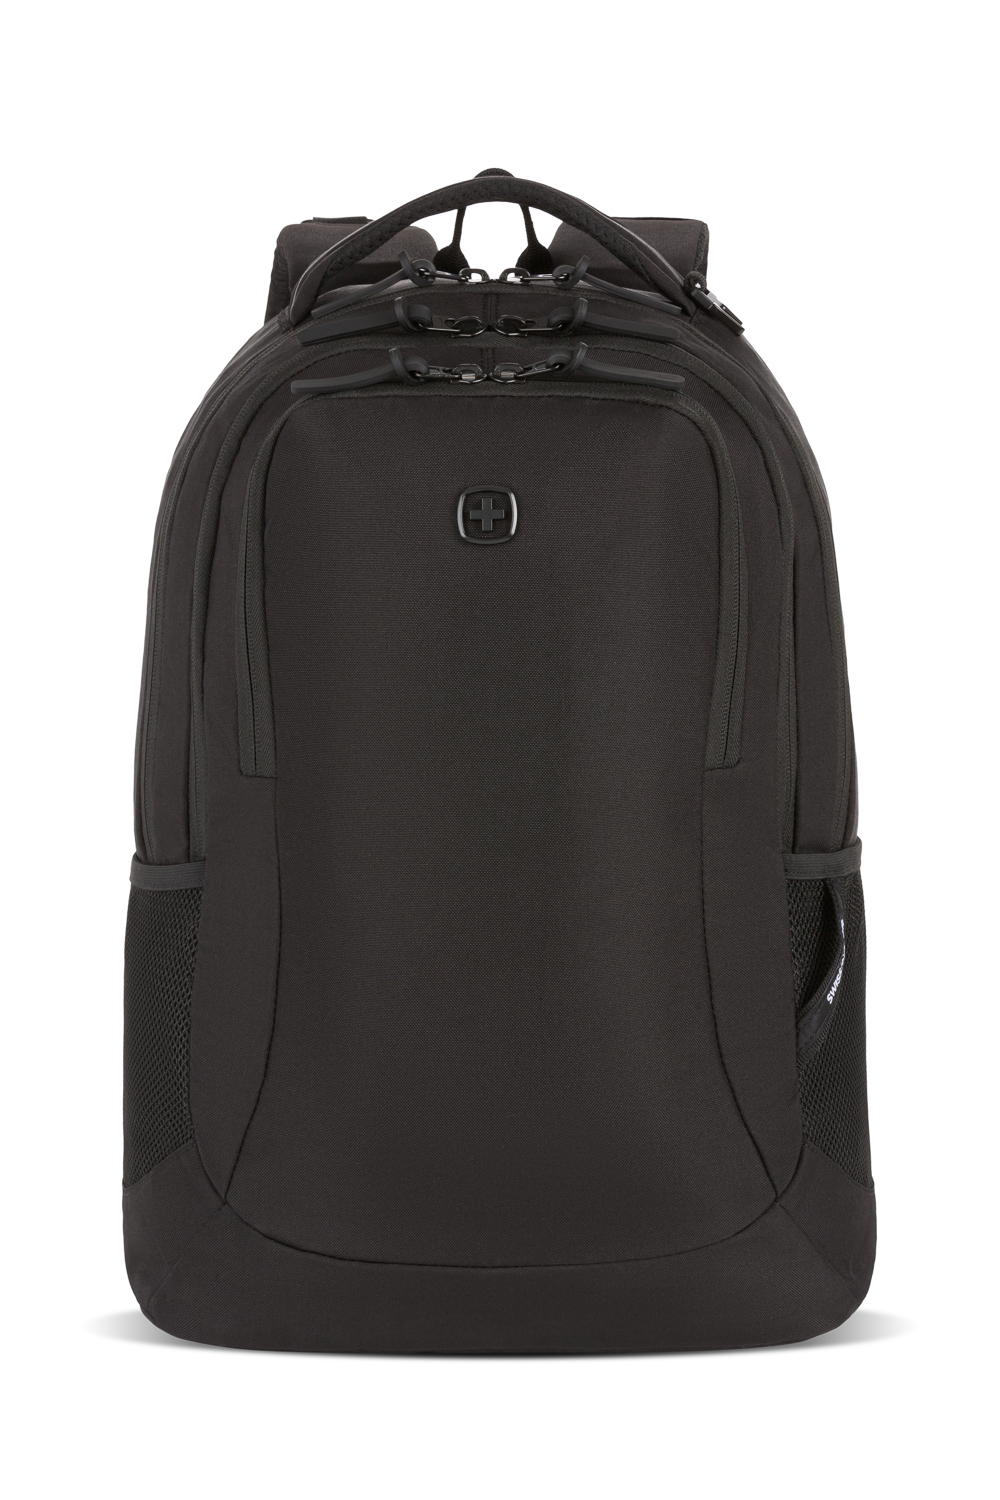 Swissgear 5532 16 inch Laptop Backpack - Black